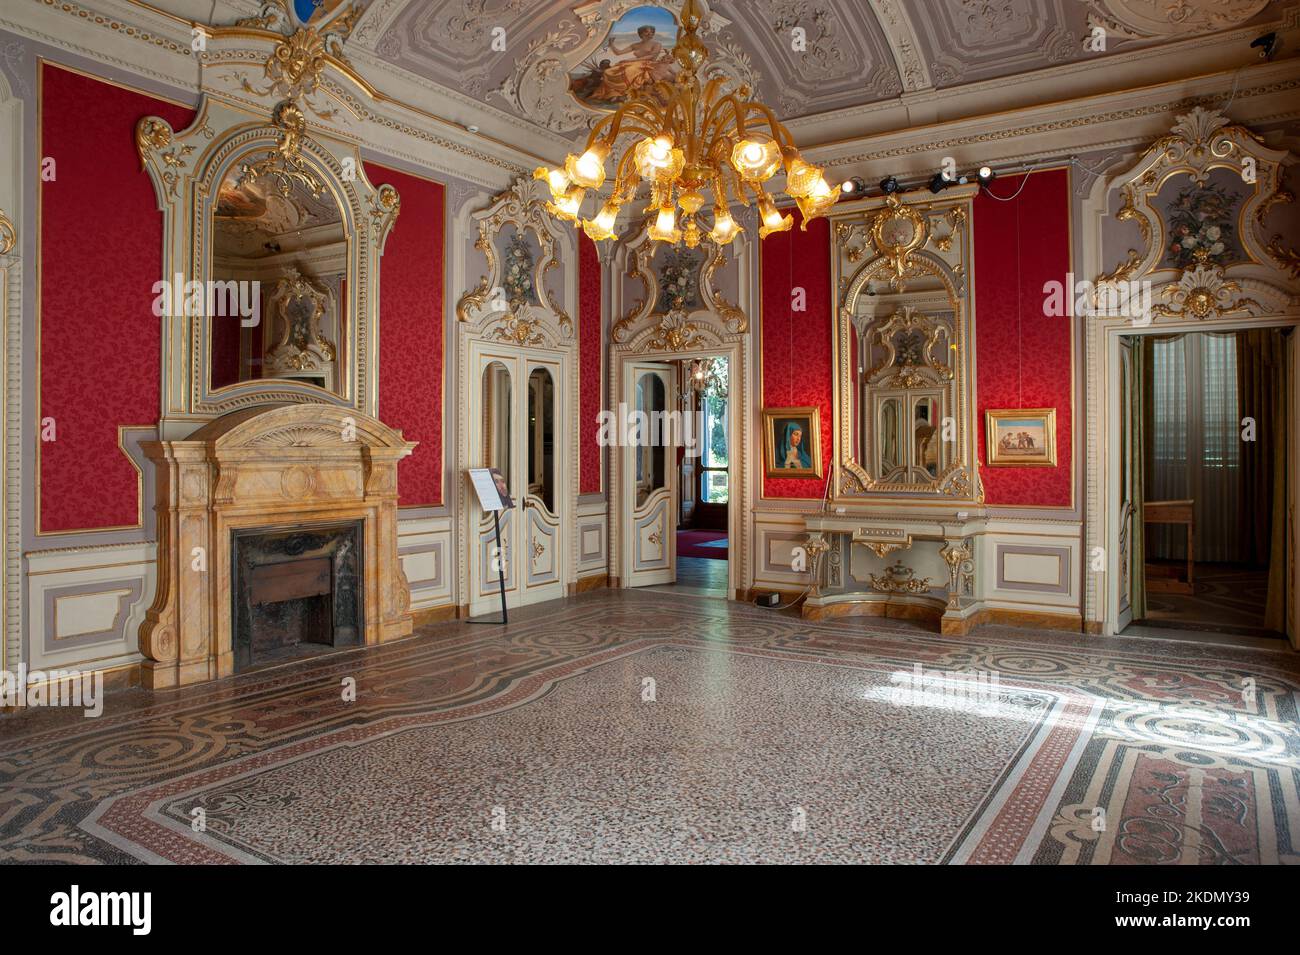 Villa Mimbelli, Giovanni Fattori civic museum, one of the beautiful villa living room. Stock Photo